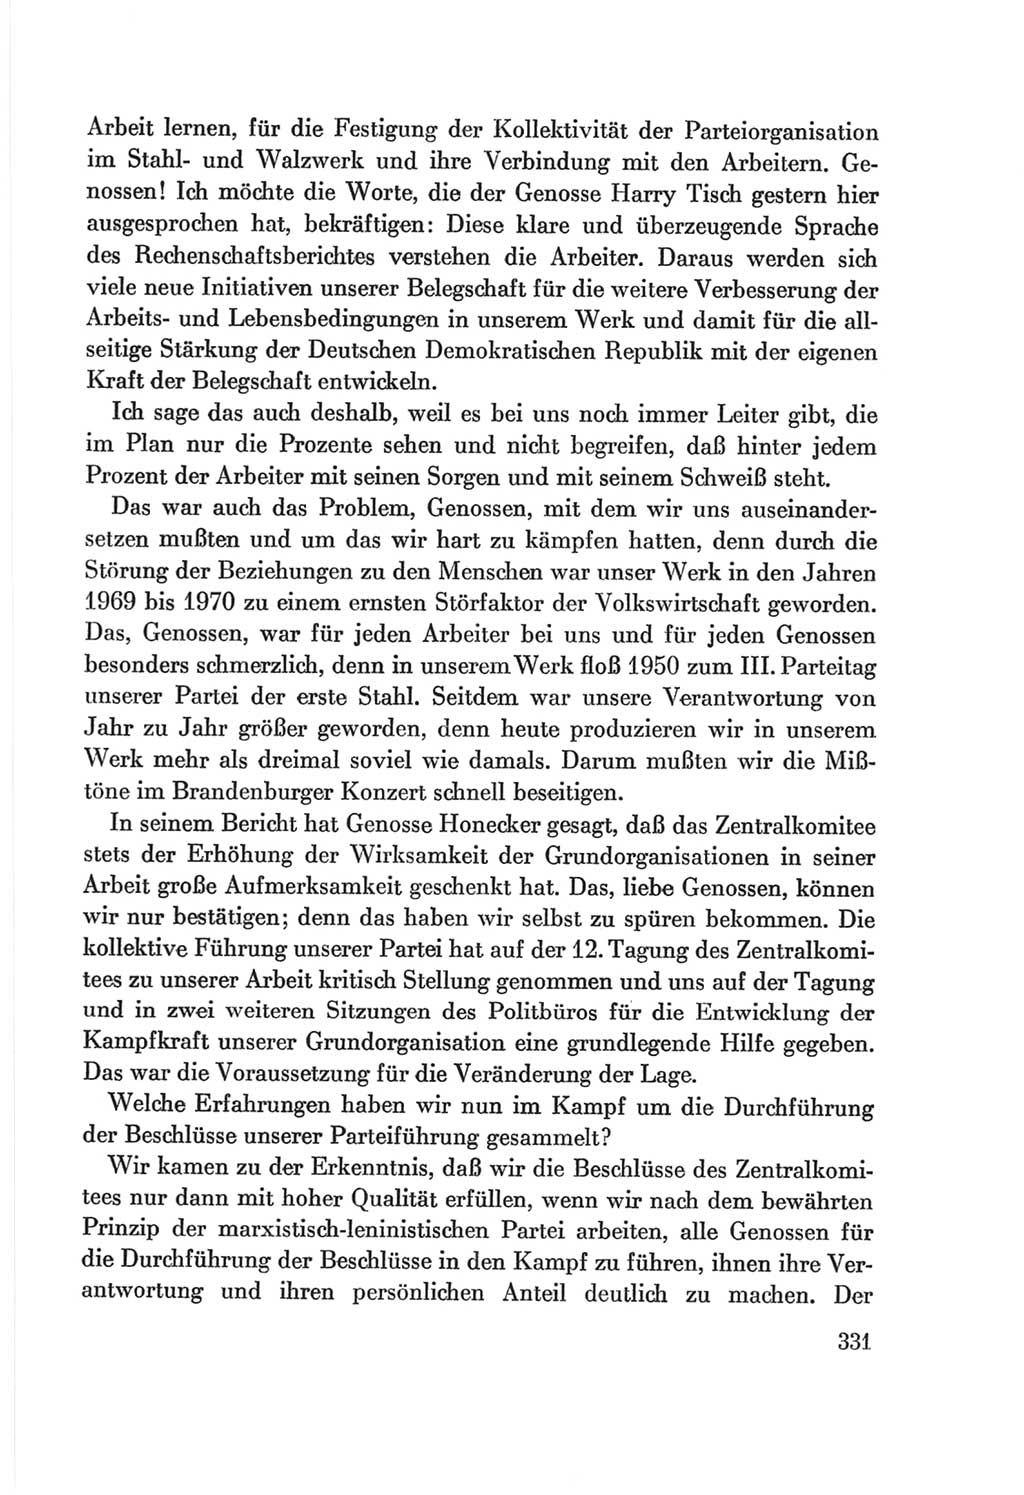 Protokoll der Verhandlungen des Ⅷ. Parteitages der Sozialistischen Einheitspartei Deutschlands (SED) [Deutsche Demokratische Republik (DDR)] 1971, Band 1, Seite 331 (Prot. Verh. Ⅷ. PT SED DDR 1971, Bd. 1, S. 331)